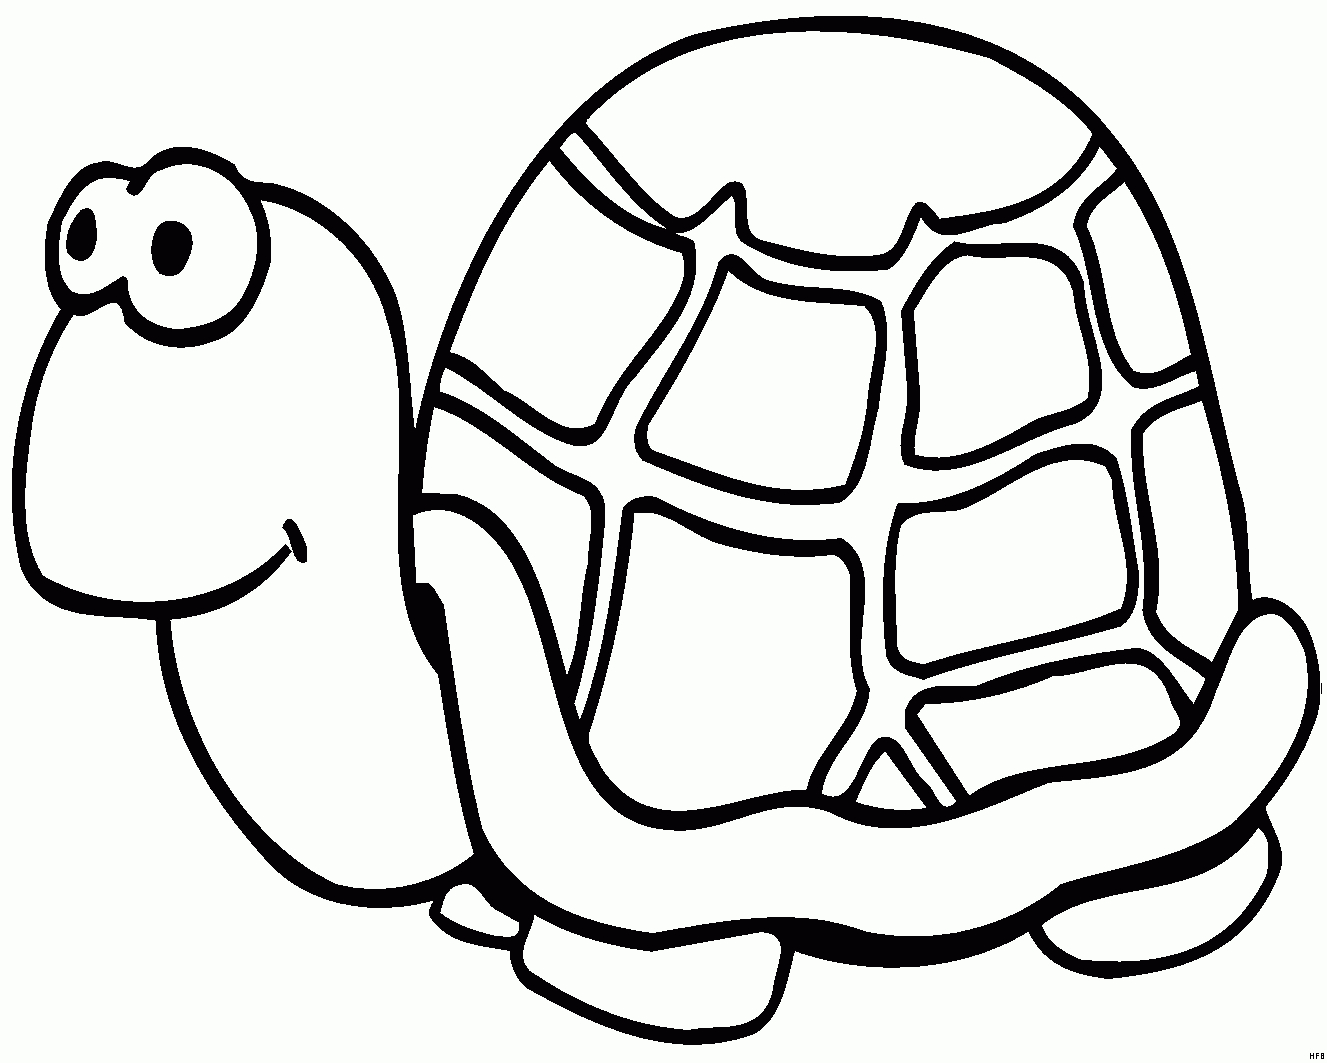 Nette Schildkroete Ausmalbild &amp; Malvorlage (Comics) ganzes Schildkröte Malvorlage